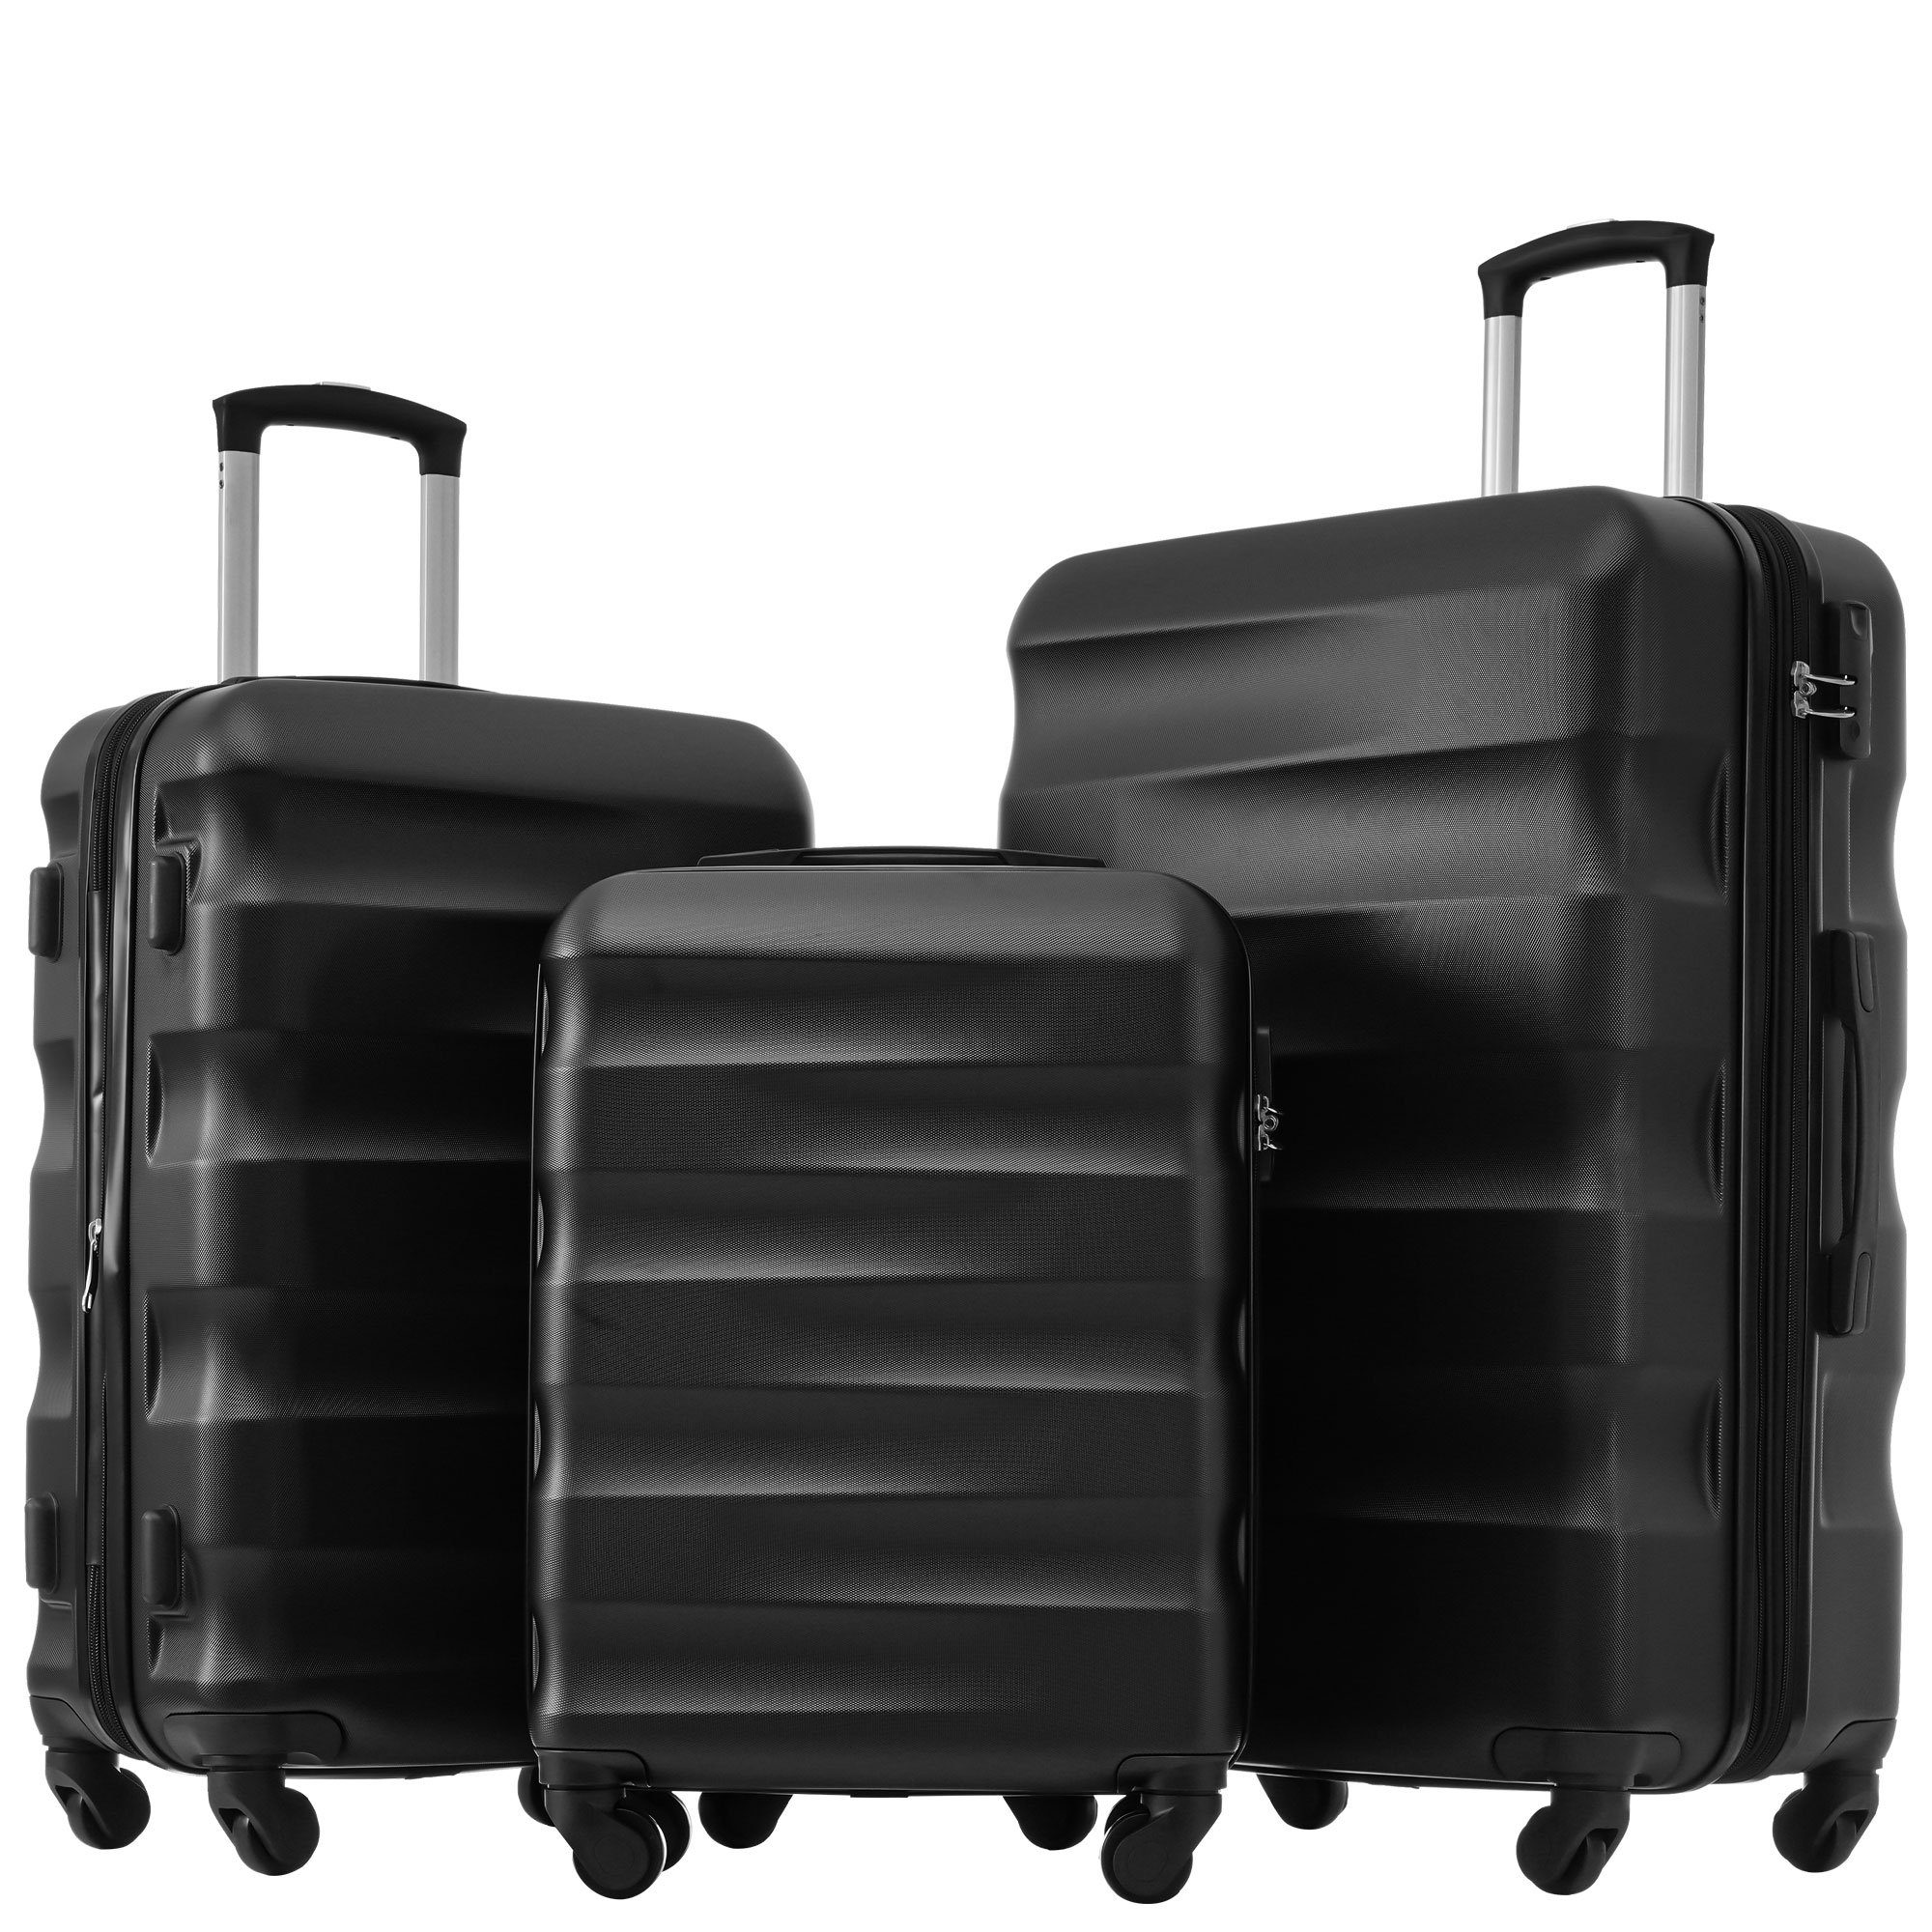 Ulife Trolleyset Kofferset Reisekoffer ABS-Material, TSA Zollschloss, 360° -Räder, 4 Rollen, (3 tlg) Schwarz | Trolley-Sets